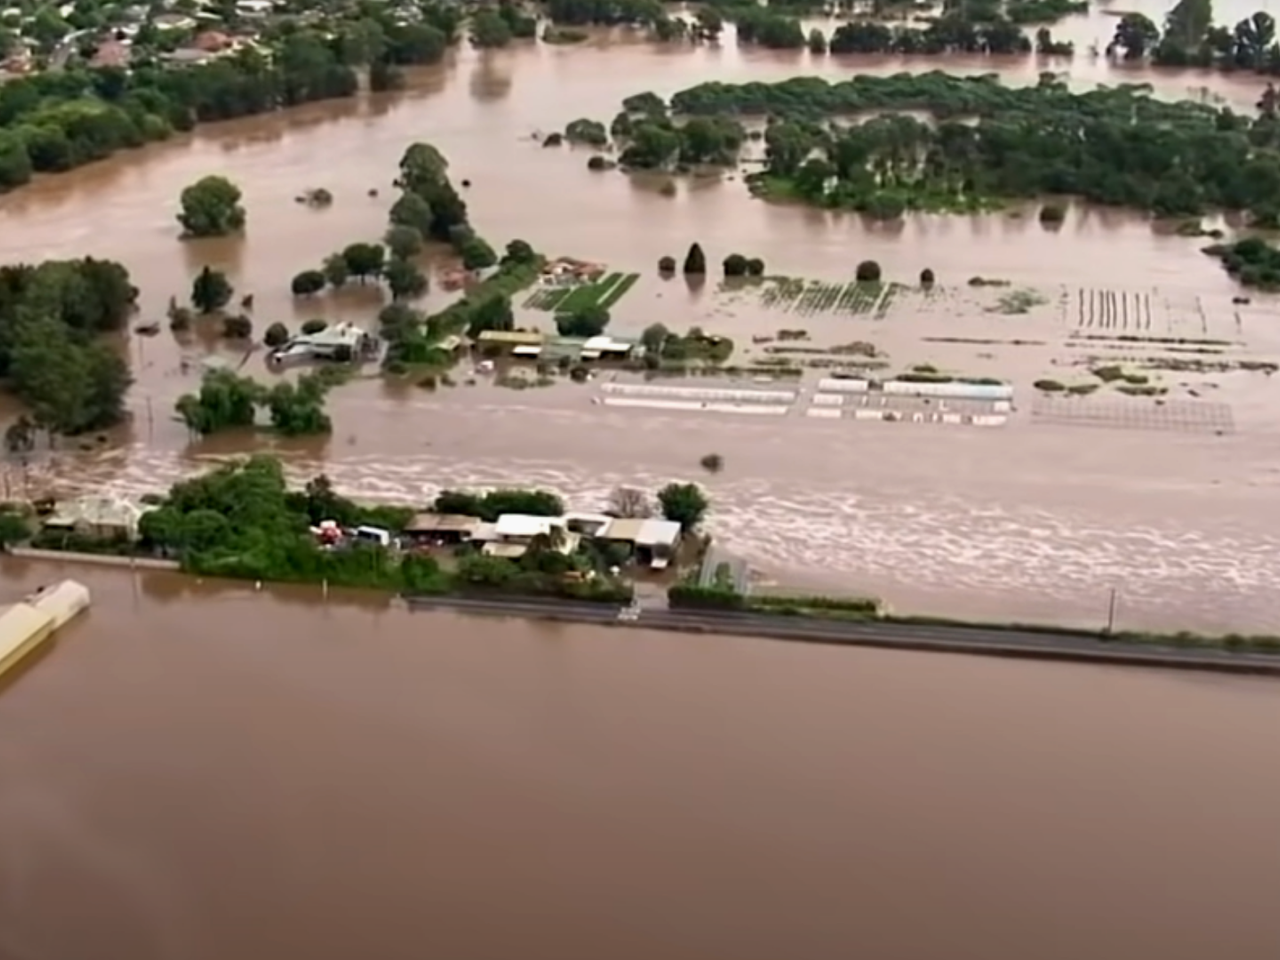 Australia walczy z powodziami. La Niña niszczy kolejne miasta! [WIDEO]